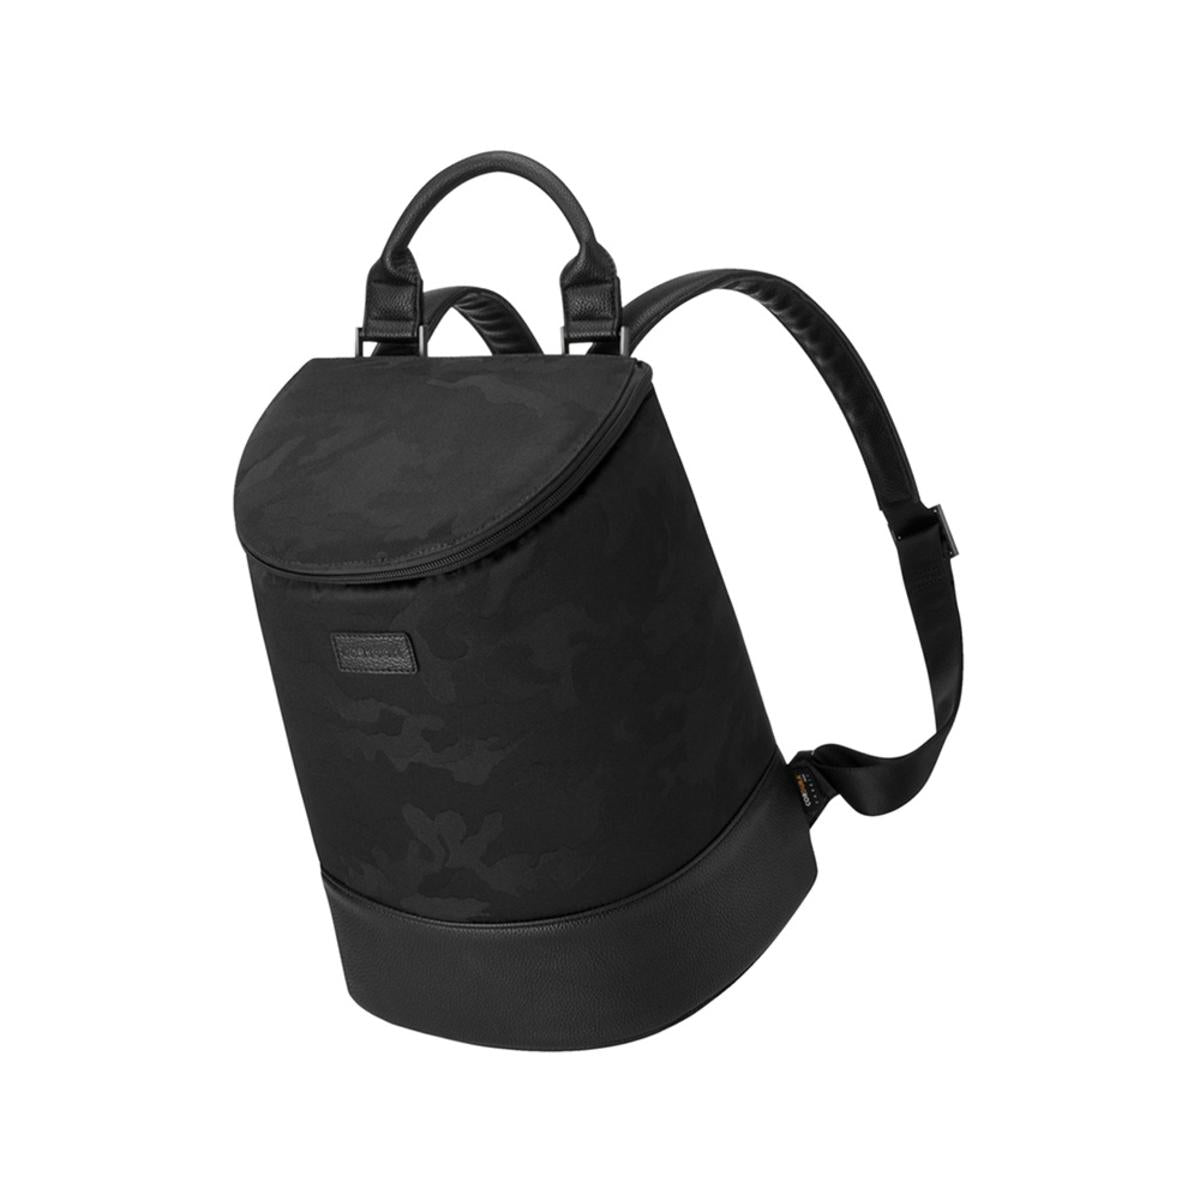 Corkcicle Eola Bucket Cooler Bag